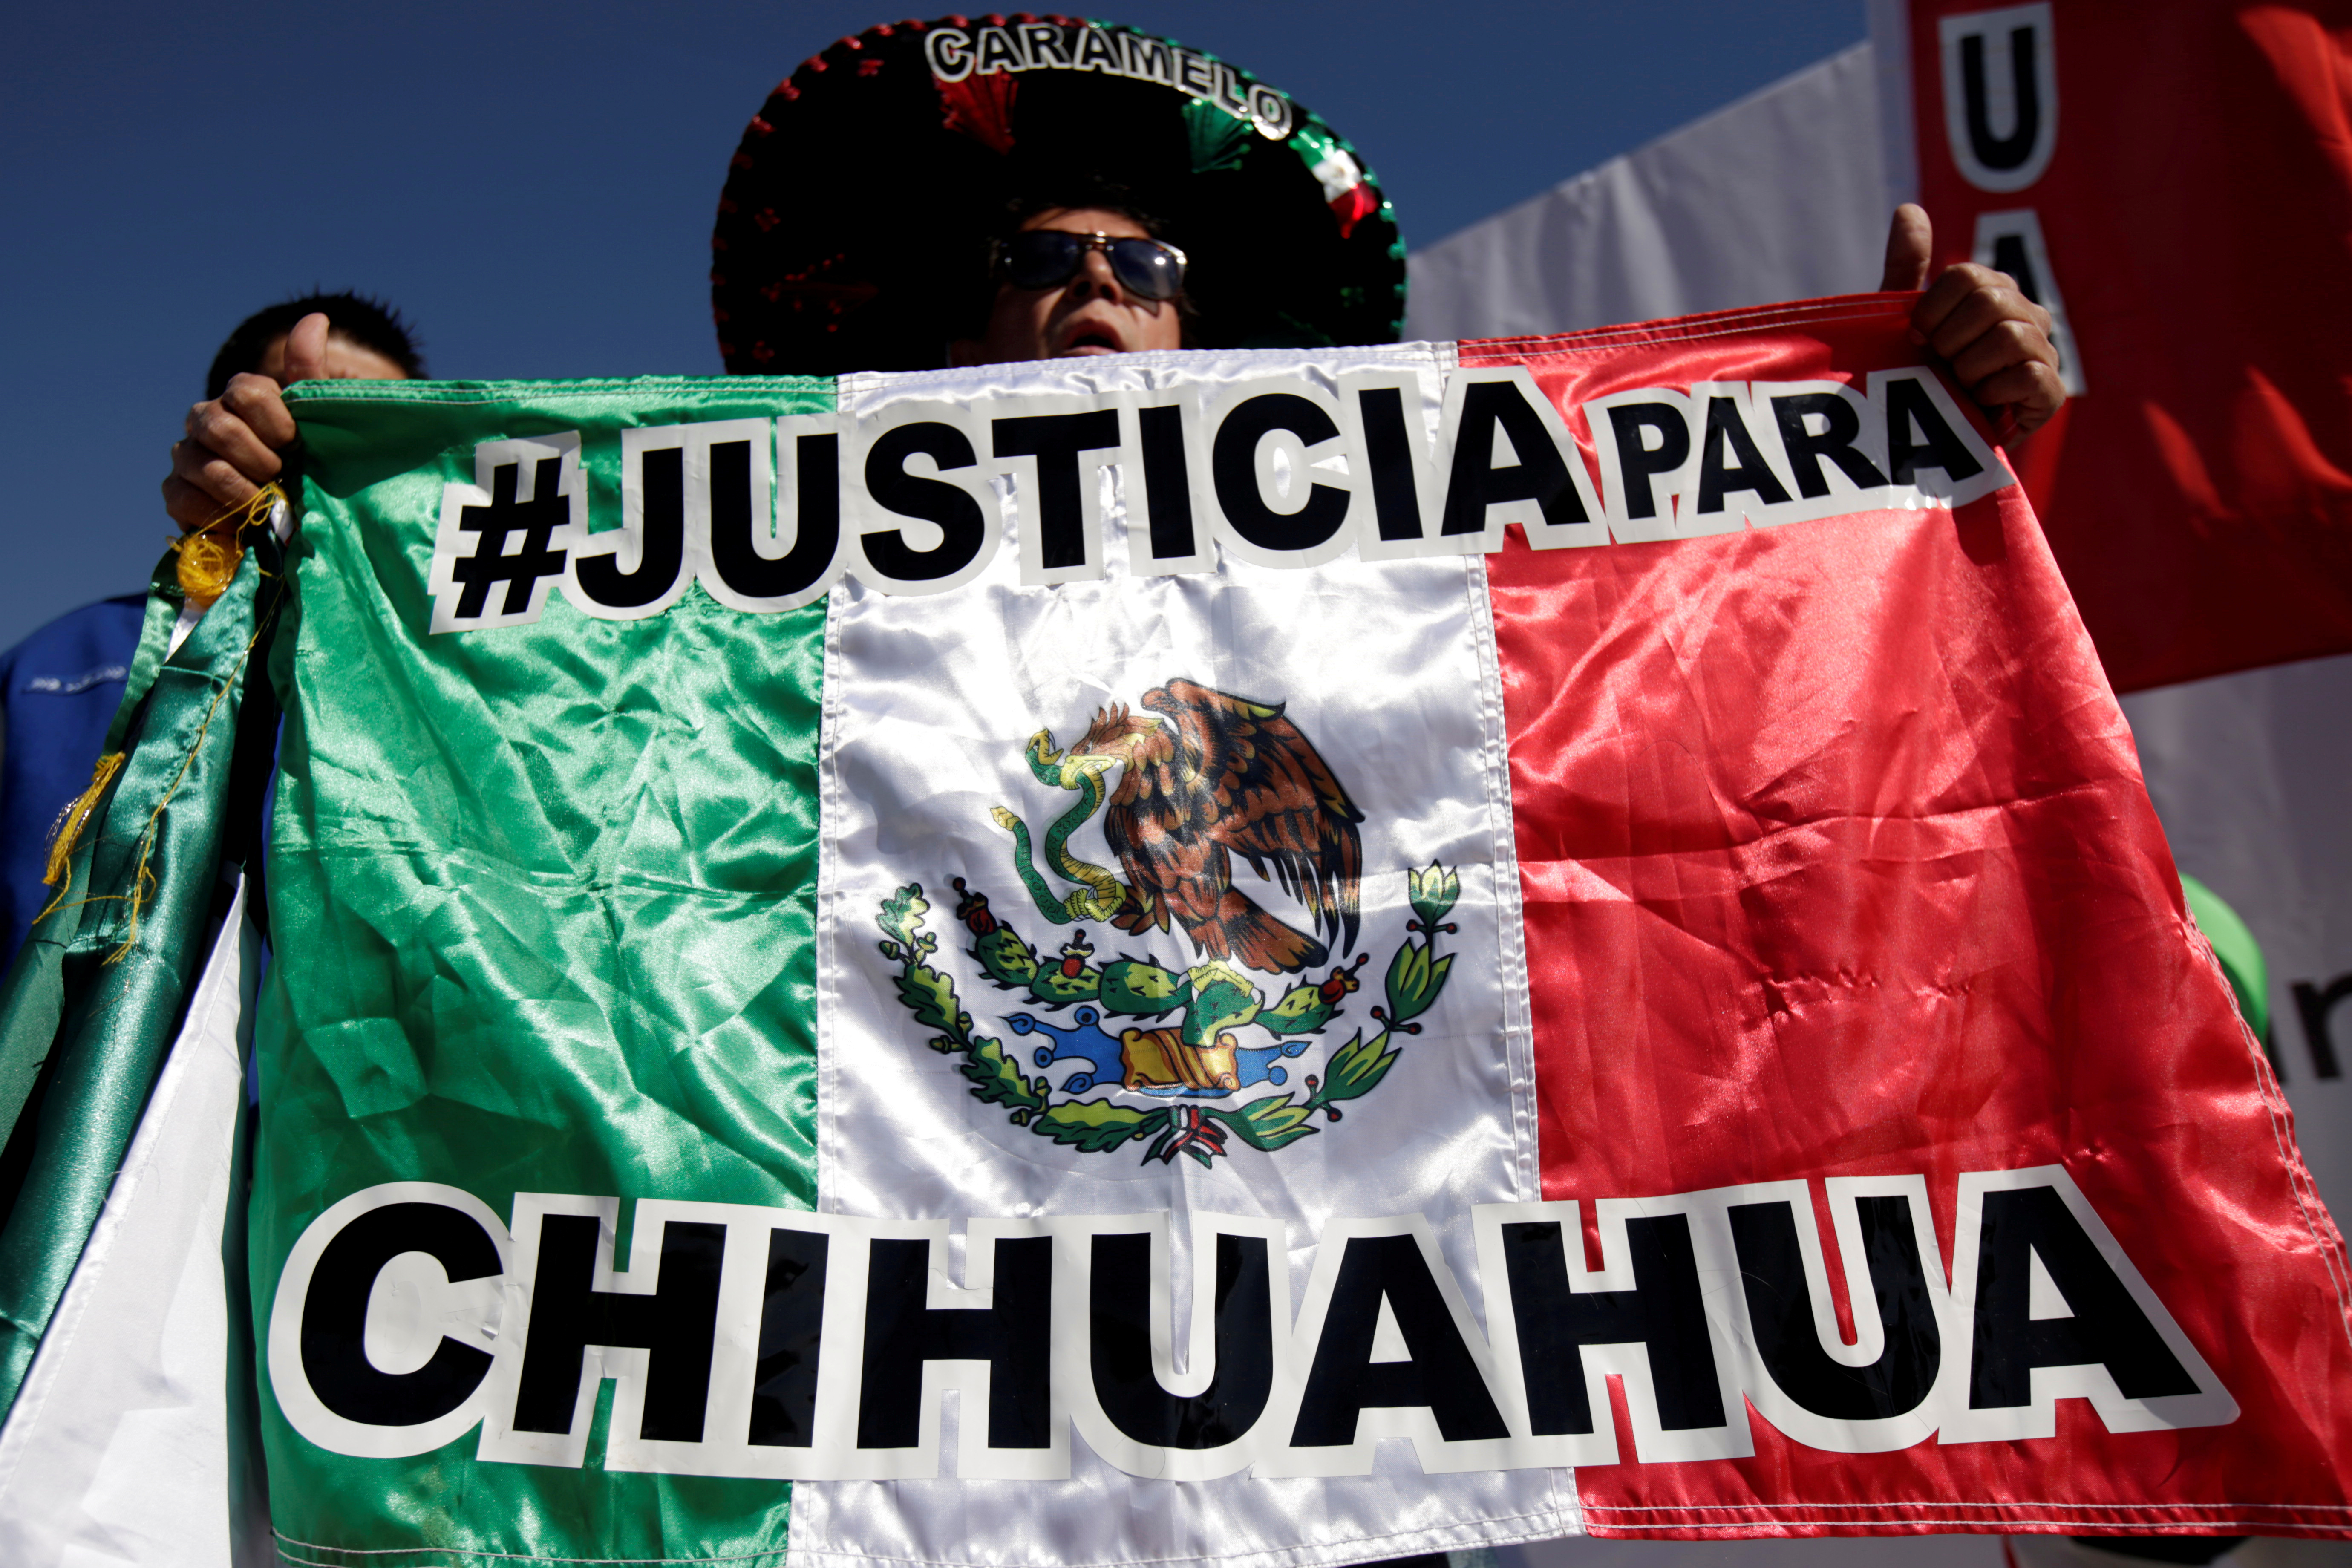 El ex gobernador del PRI puede ser el responsable de numerosos desfalcos por miles de millones de pesos al estado de Chihuahua (Foto: Reuters / Jose Luis Gonzalez)